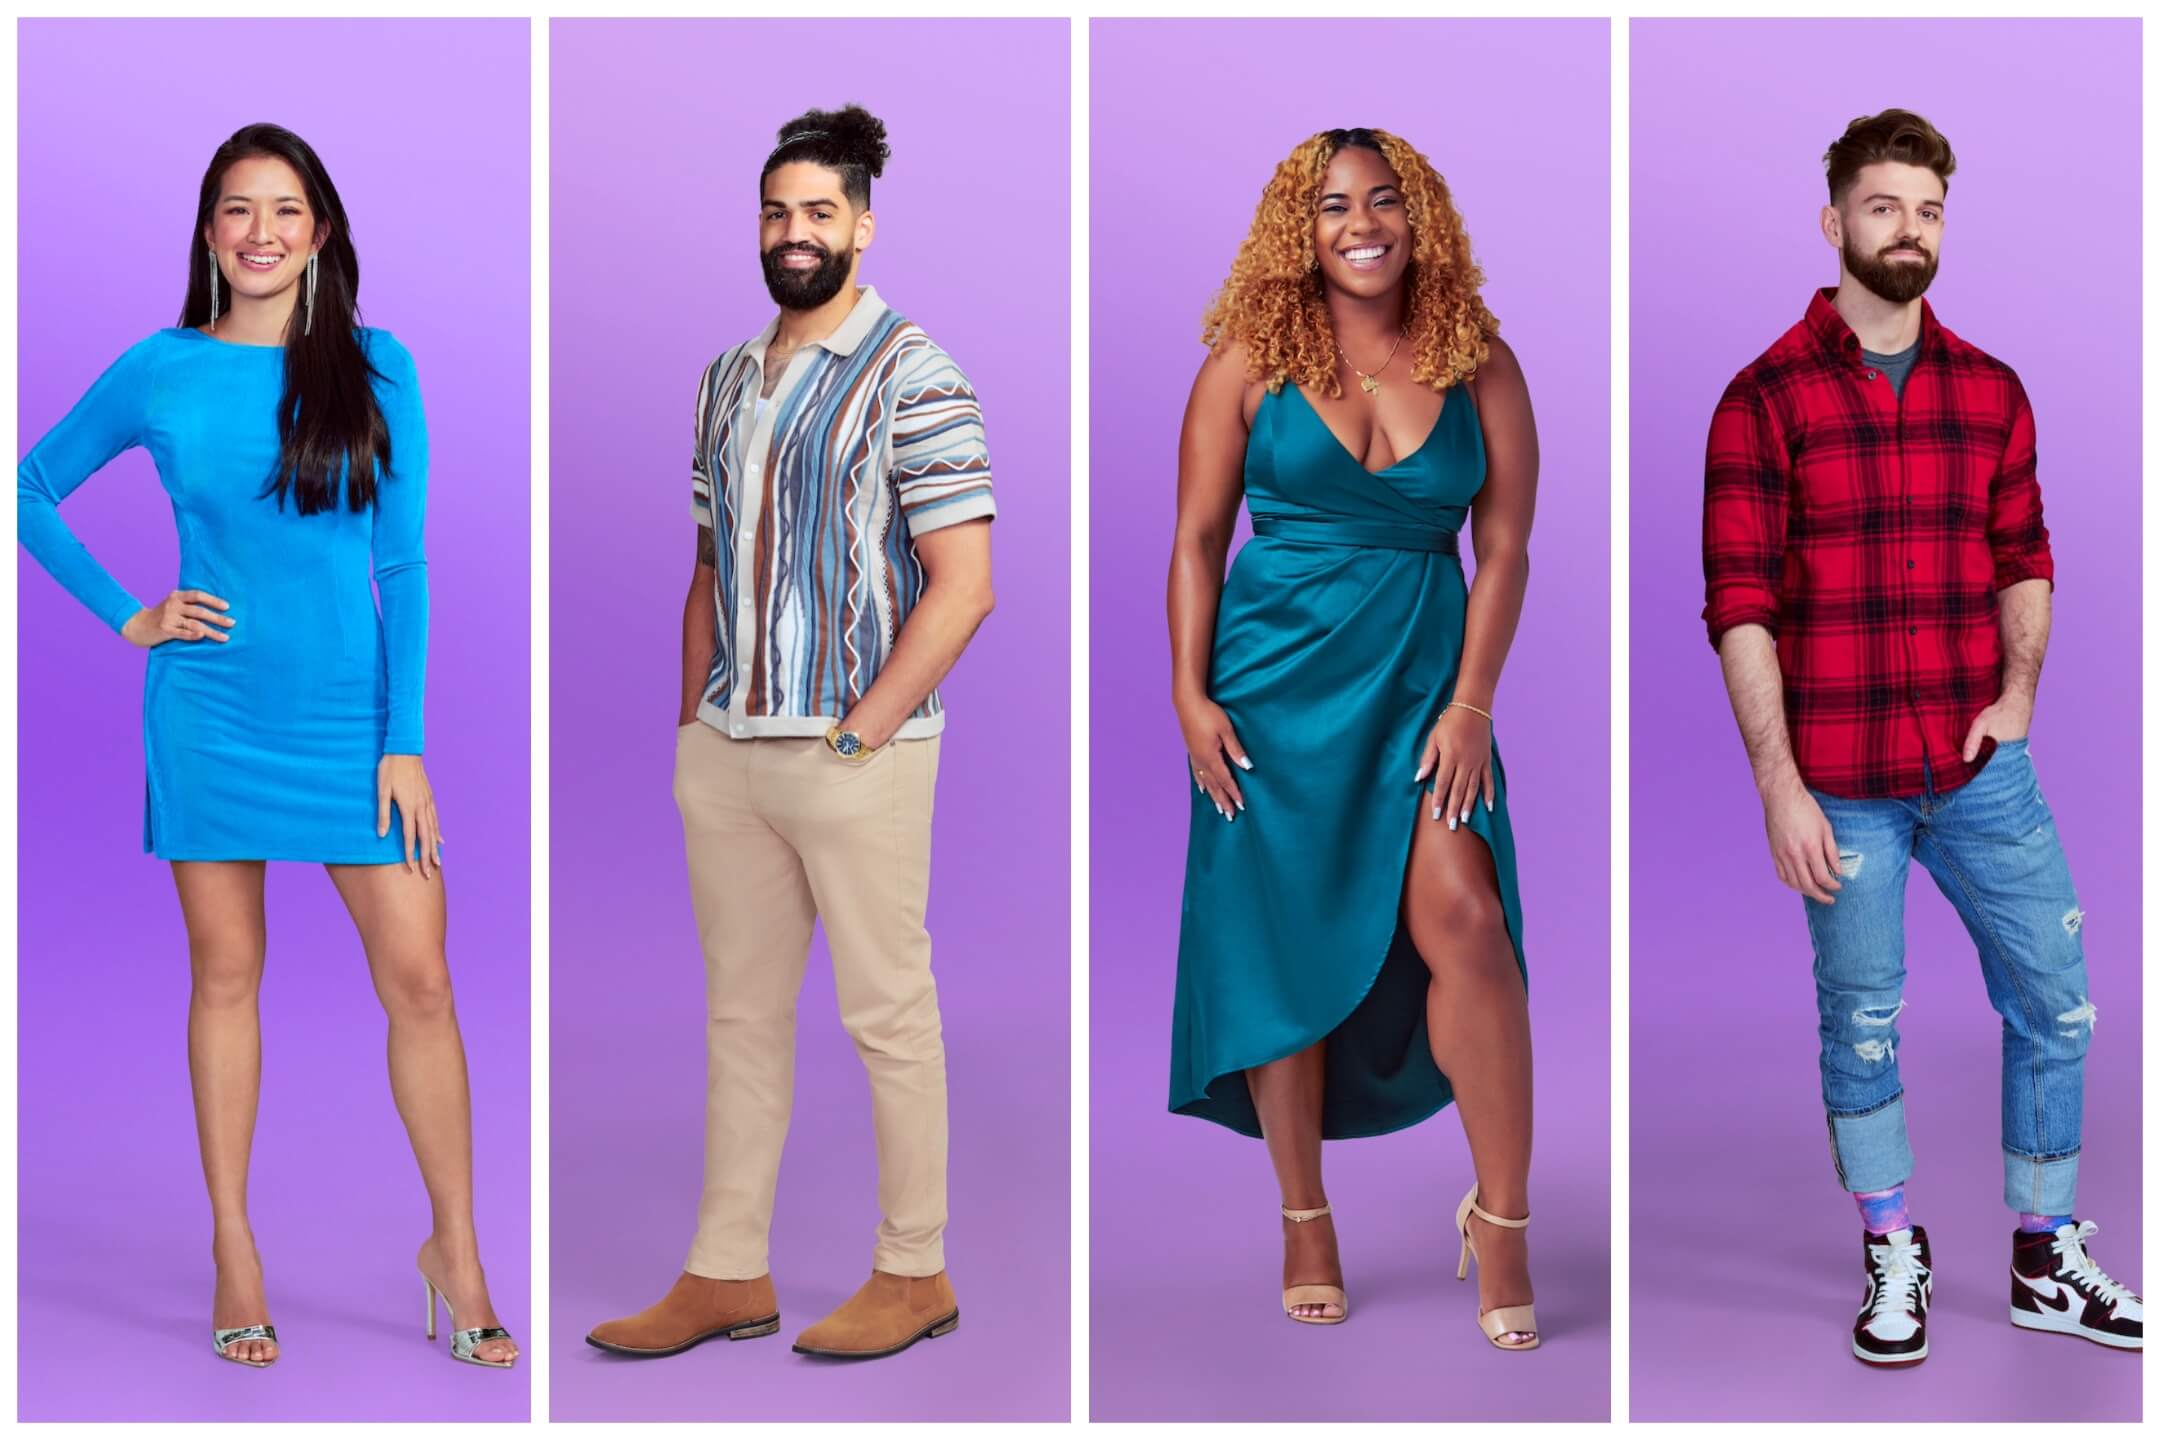 4 Love Is Blind Season 6 cast members on a purple background